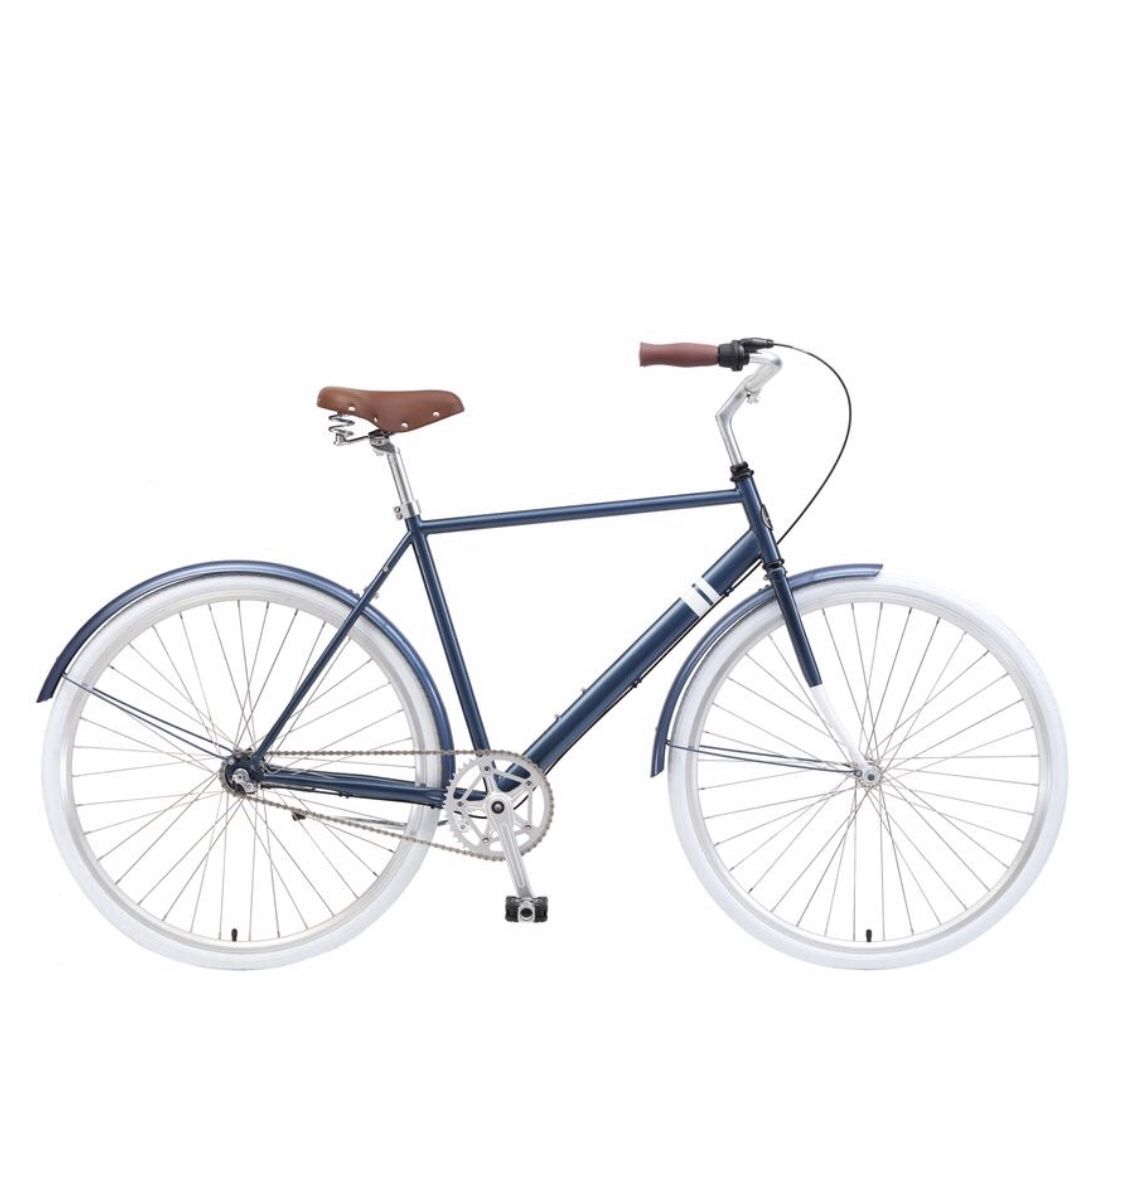 Sole cruiser bicycle. **Brand new in box **. Blue cruiser bike